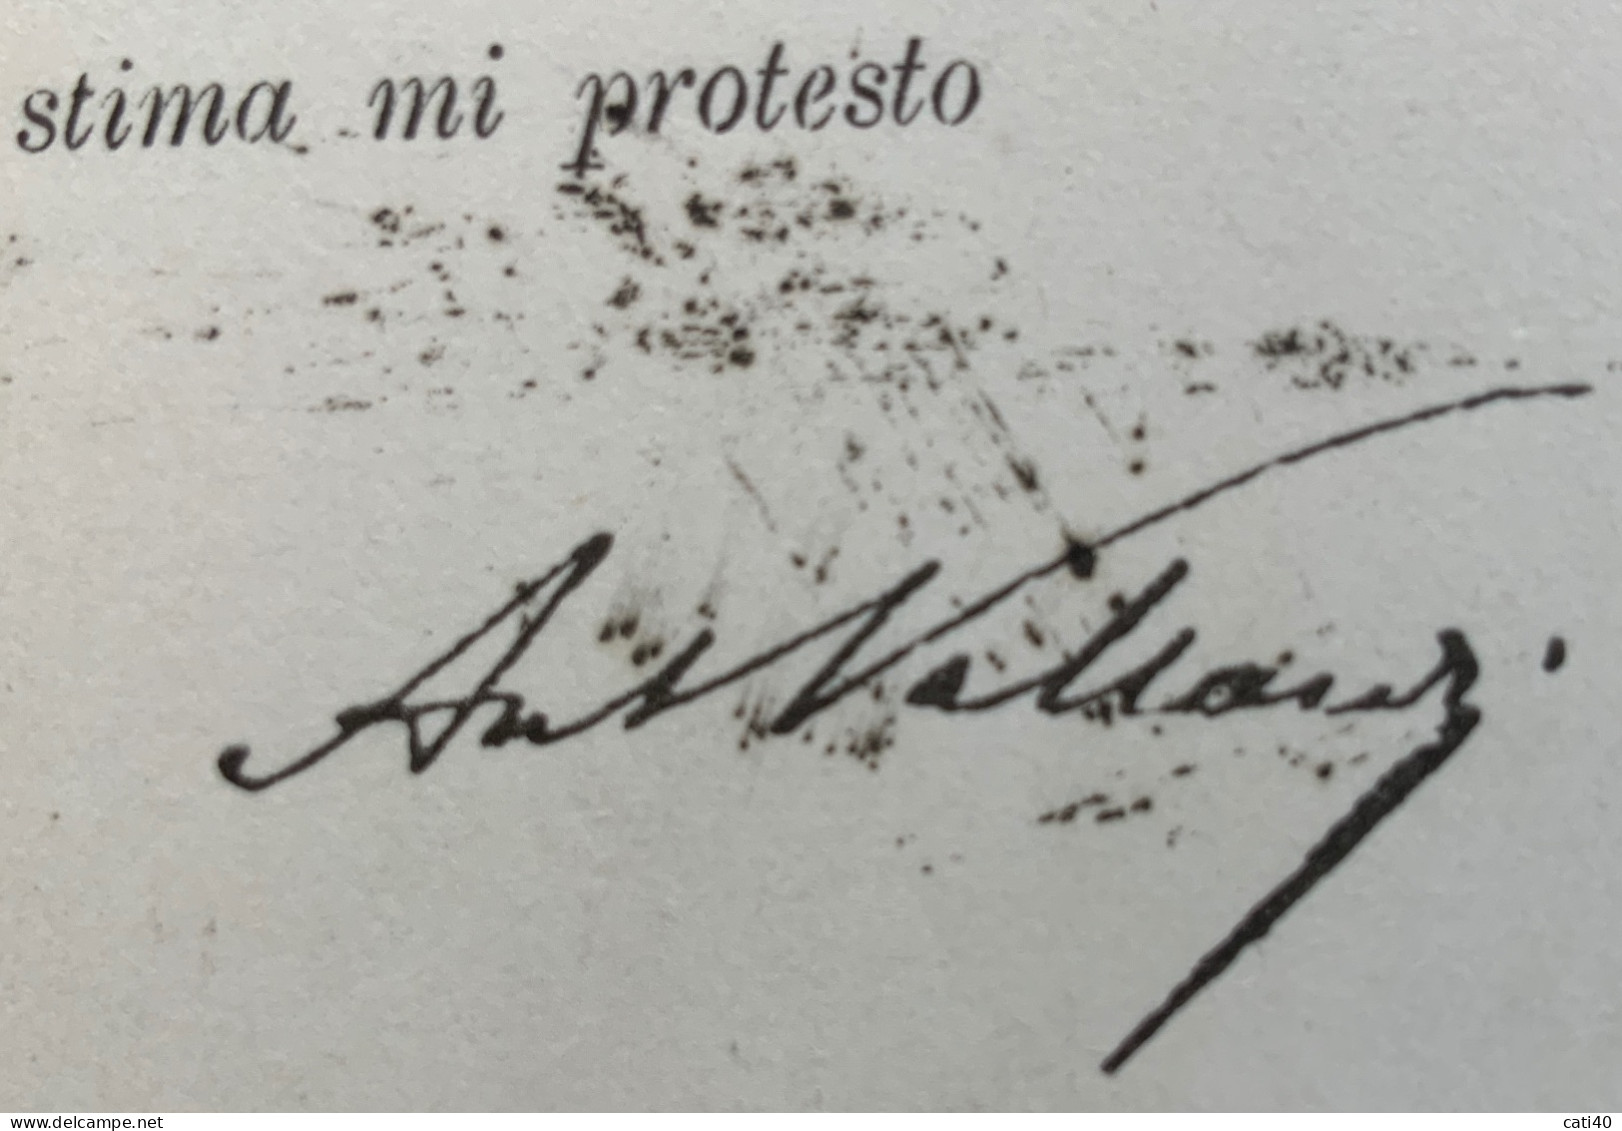 ANTONIO VALLARDI - EDITORE - CARTOLINA AUTOGRAFA DA MILANO A MACERATA I-N DATA 16 MAGGIO 1893  - RR - Personnages Historiques